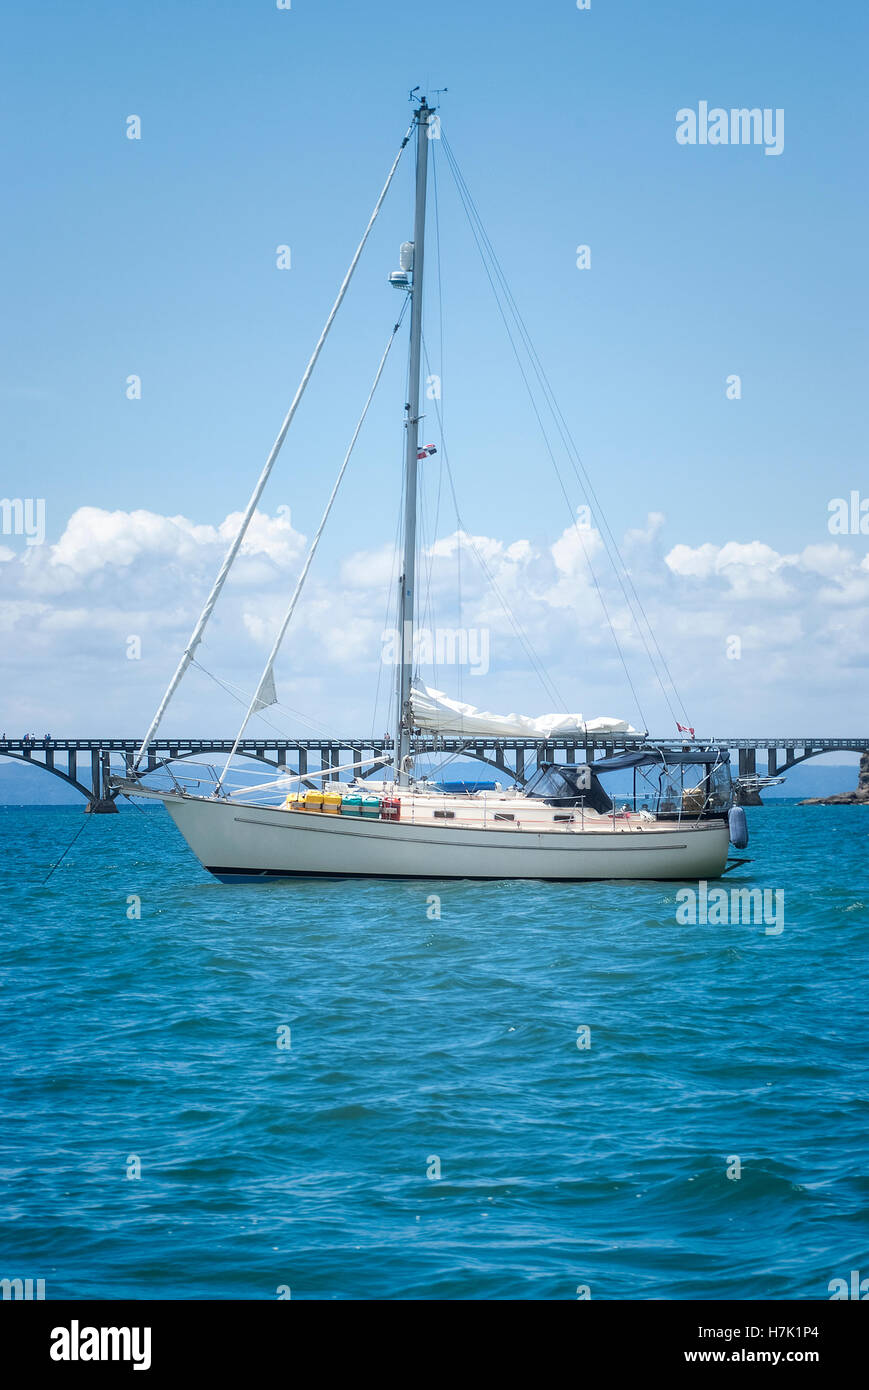 View of a sail boat ancored at Samana Bay and Los Puentes bridge at the background, Samana, Dominican Republic. Stock Photo